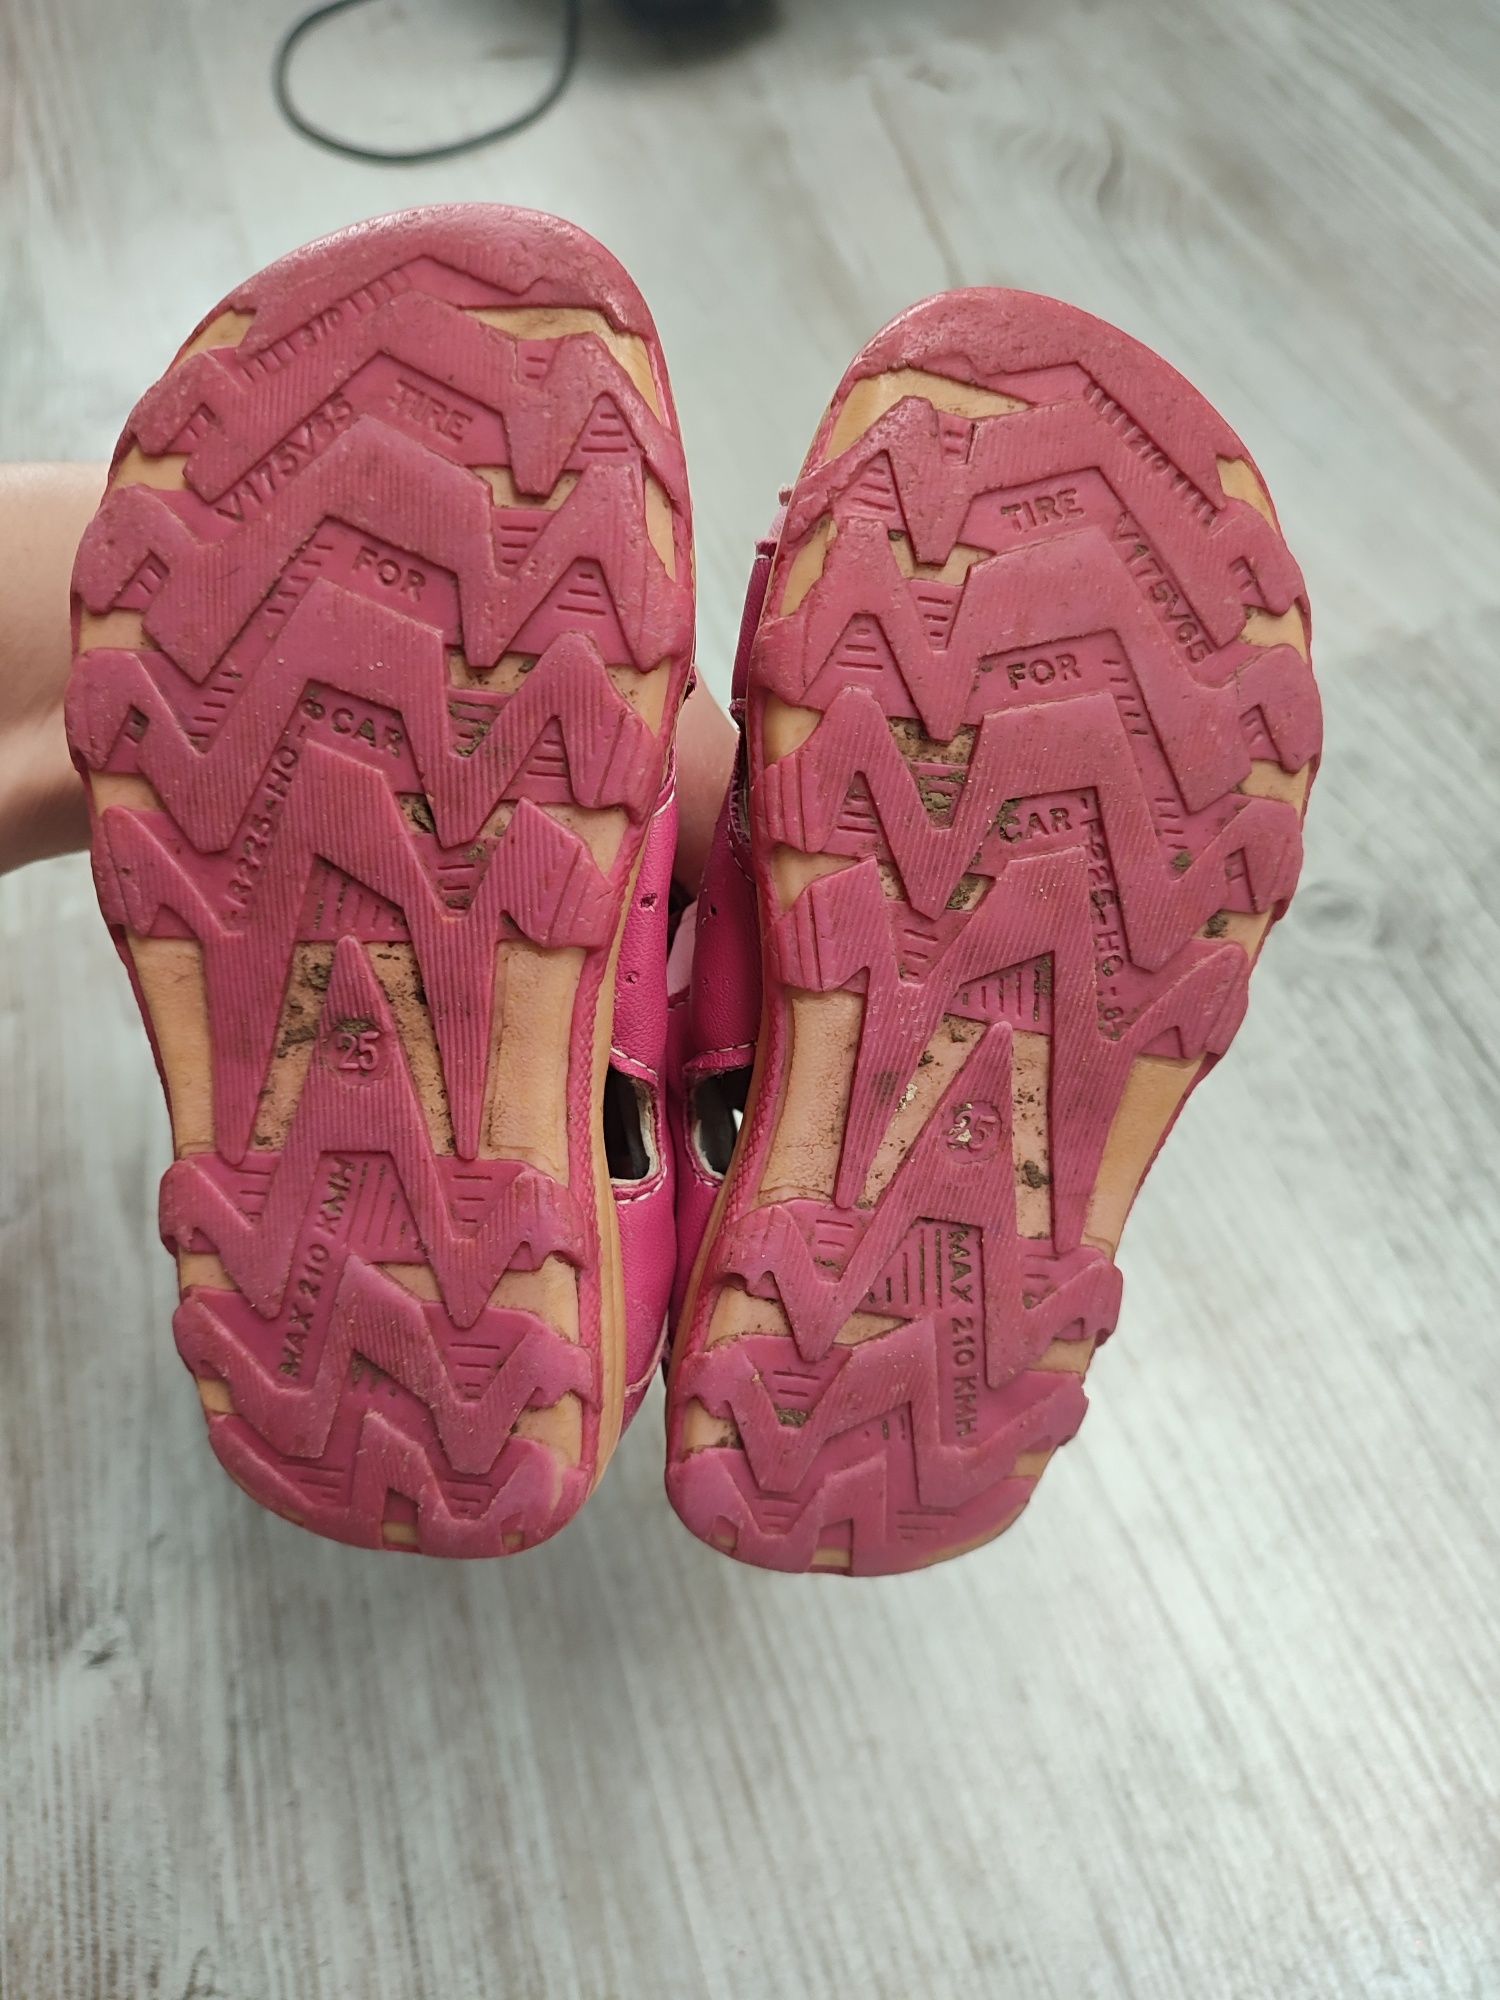 Acris 25 sandały dziewczęce różowe buty półbuty lato kwiatek